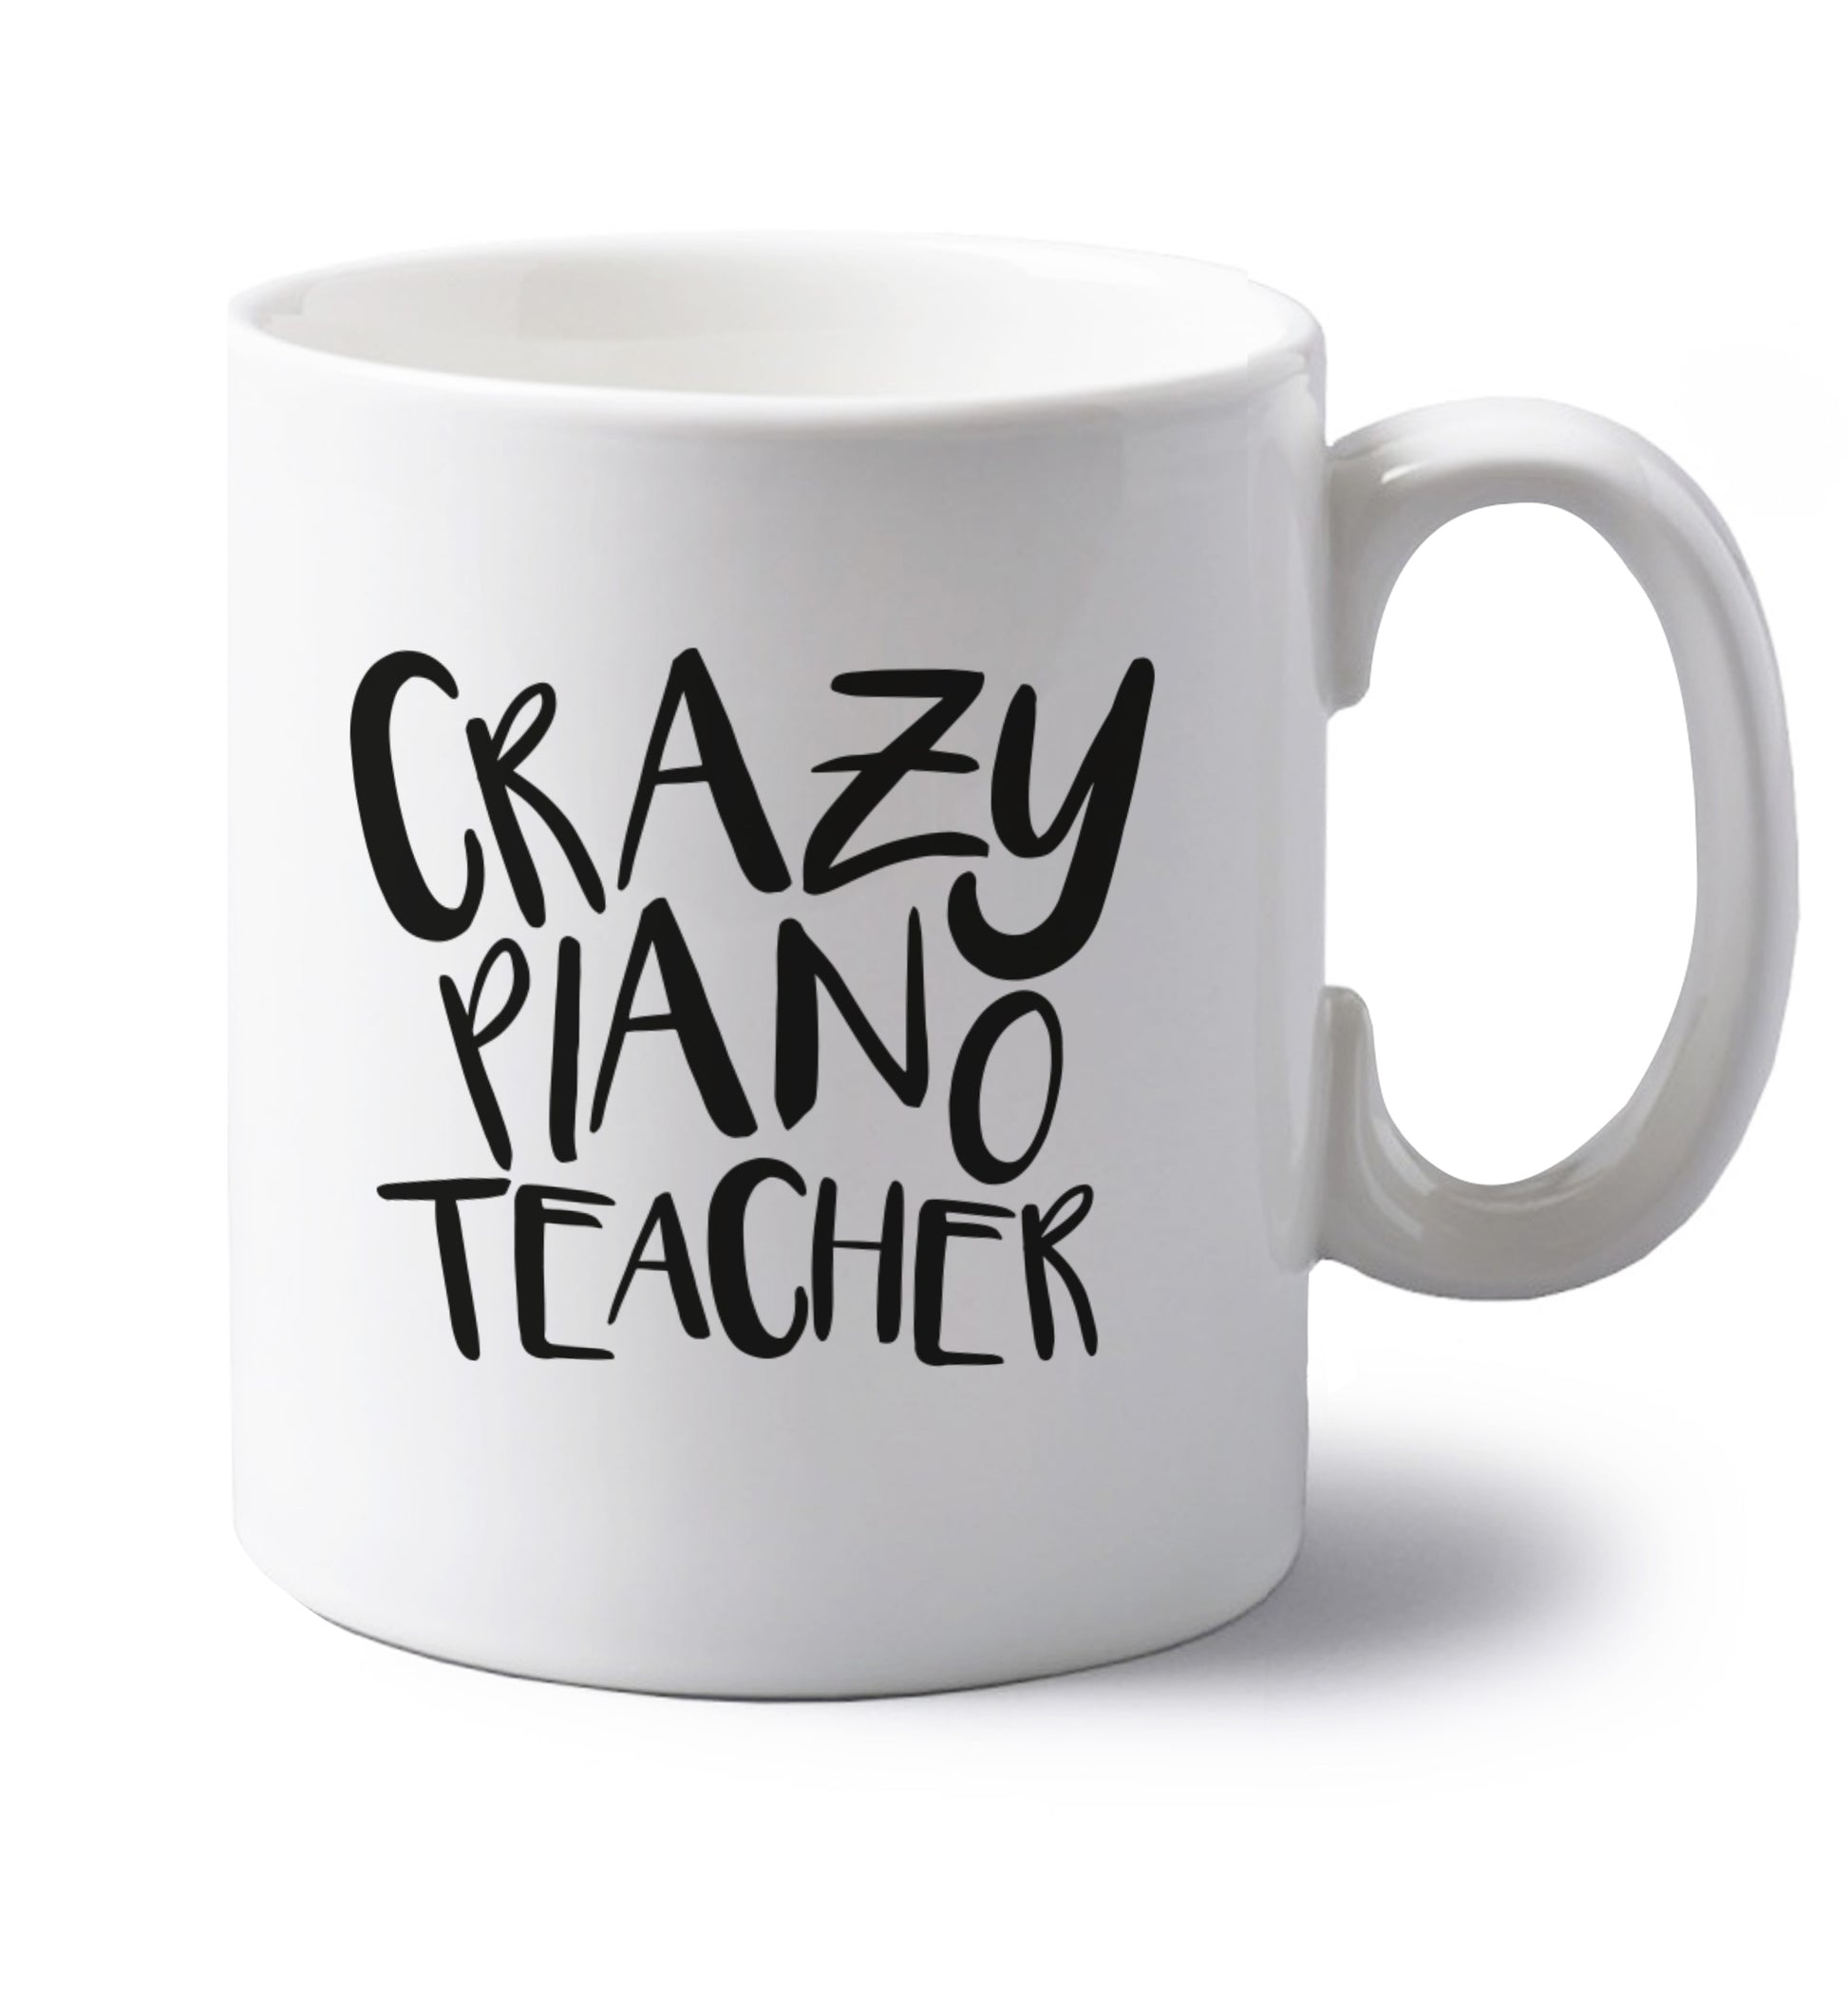 Crazy piano teacher left handed white ceramic mug 